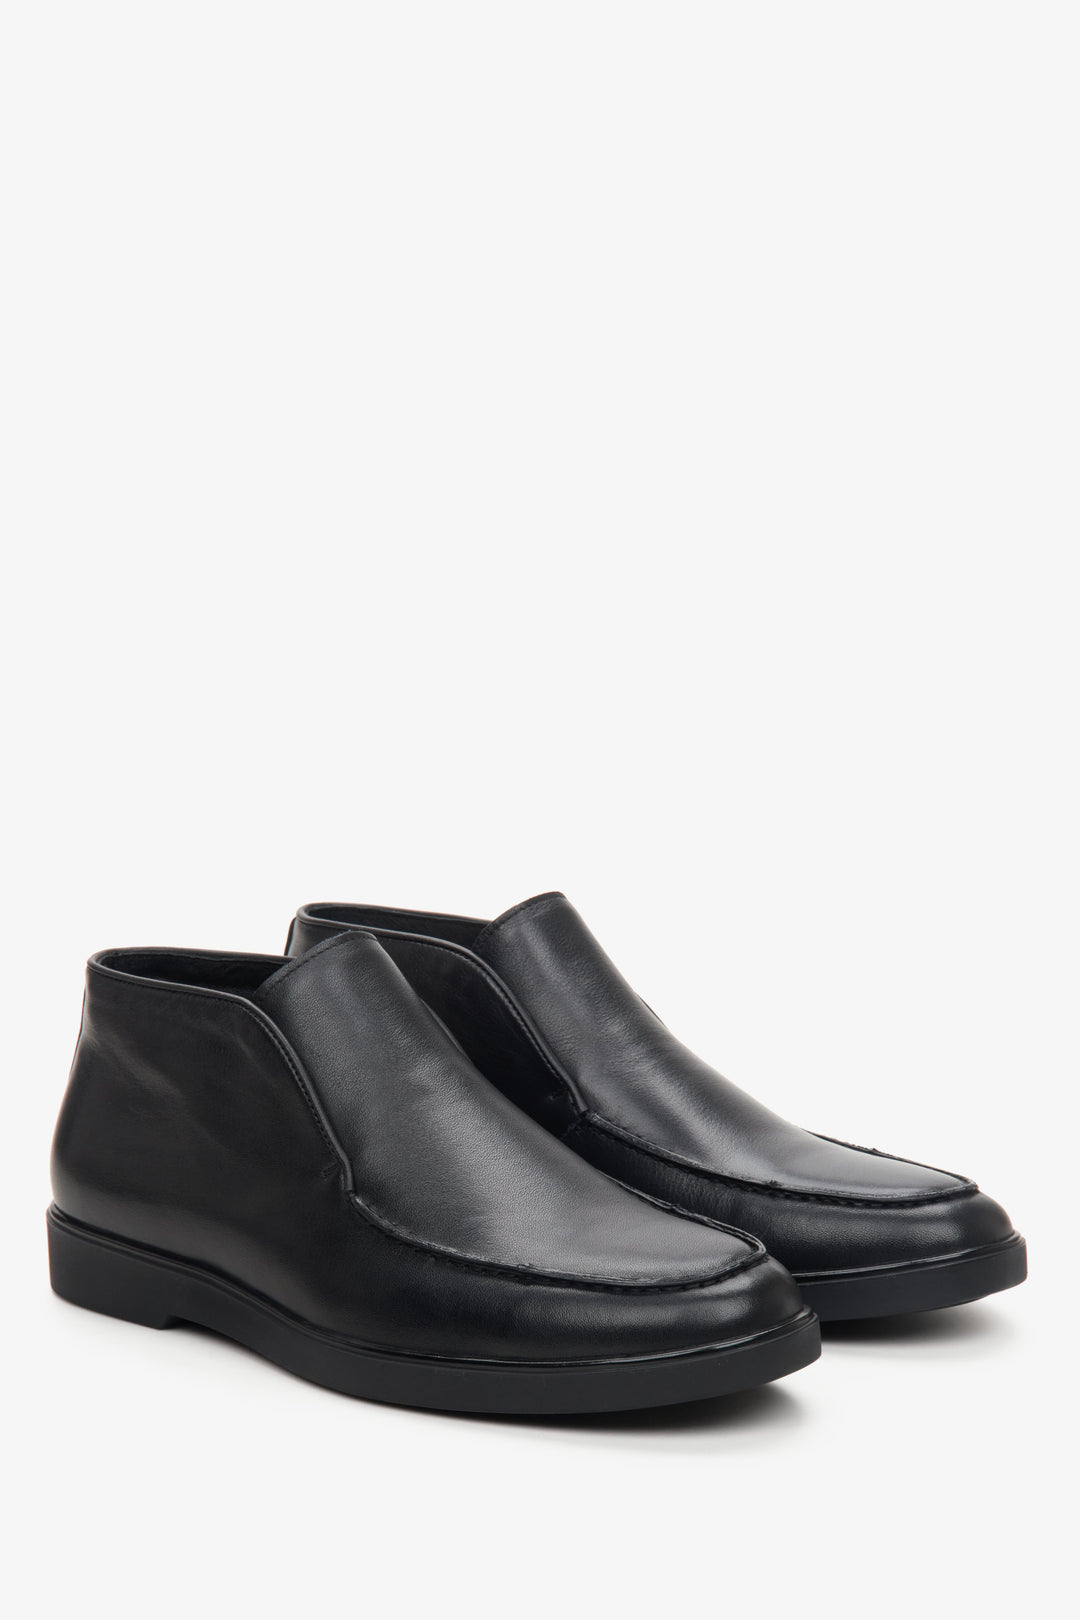 Estro black leather men's ankle boots.